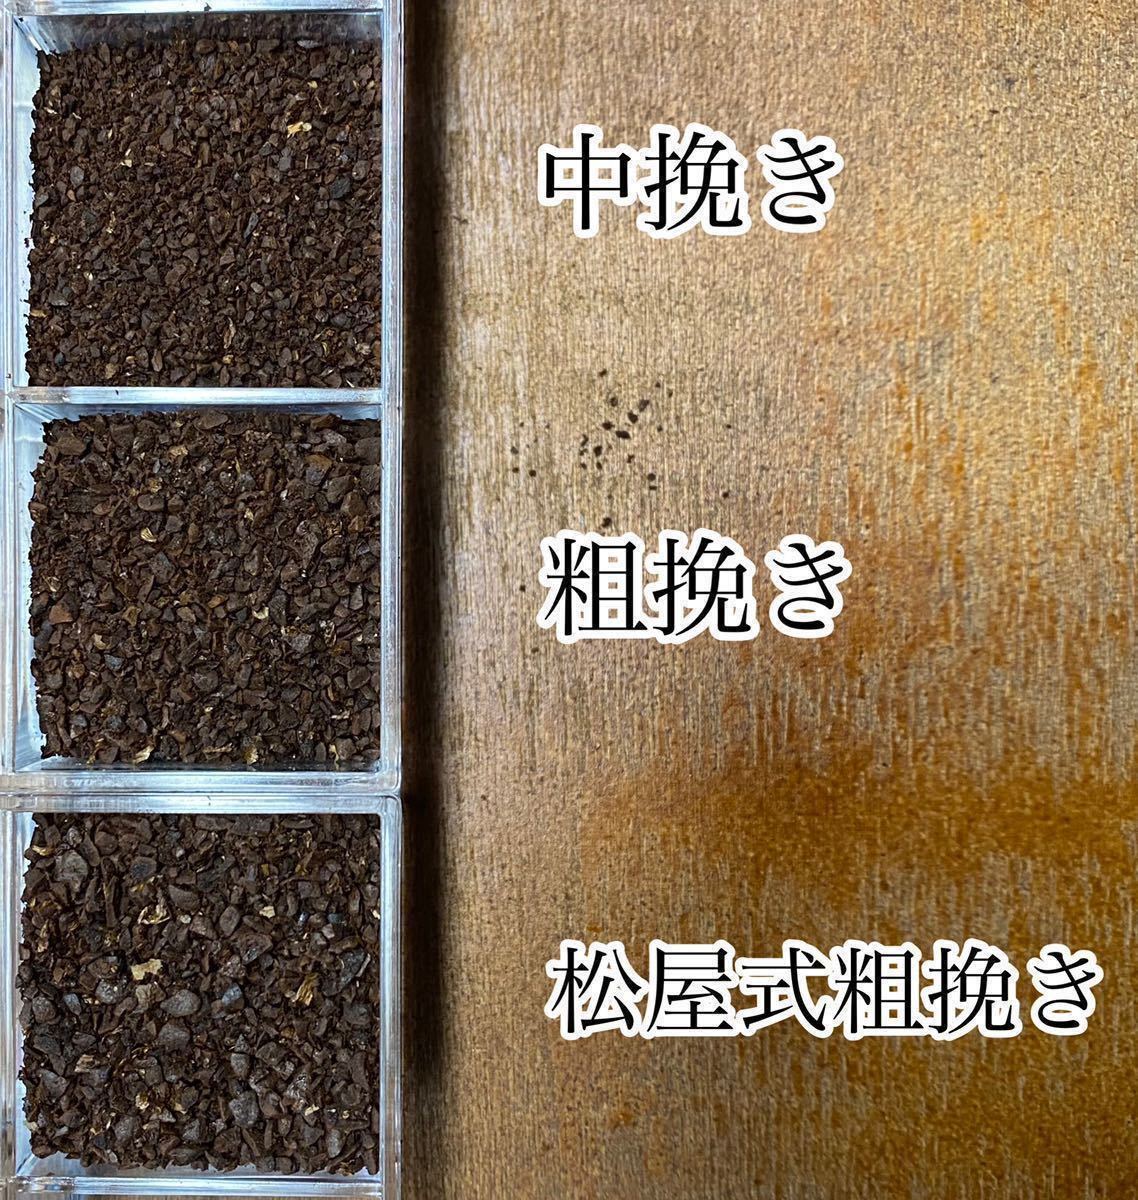 冬限定ブレンドセットA 自家焙煎コーヒー豆3種(100g×3個)